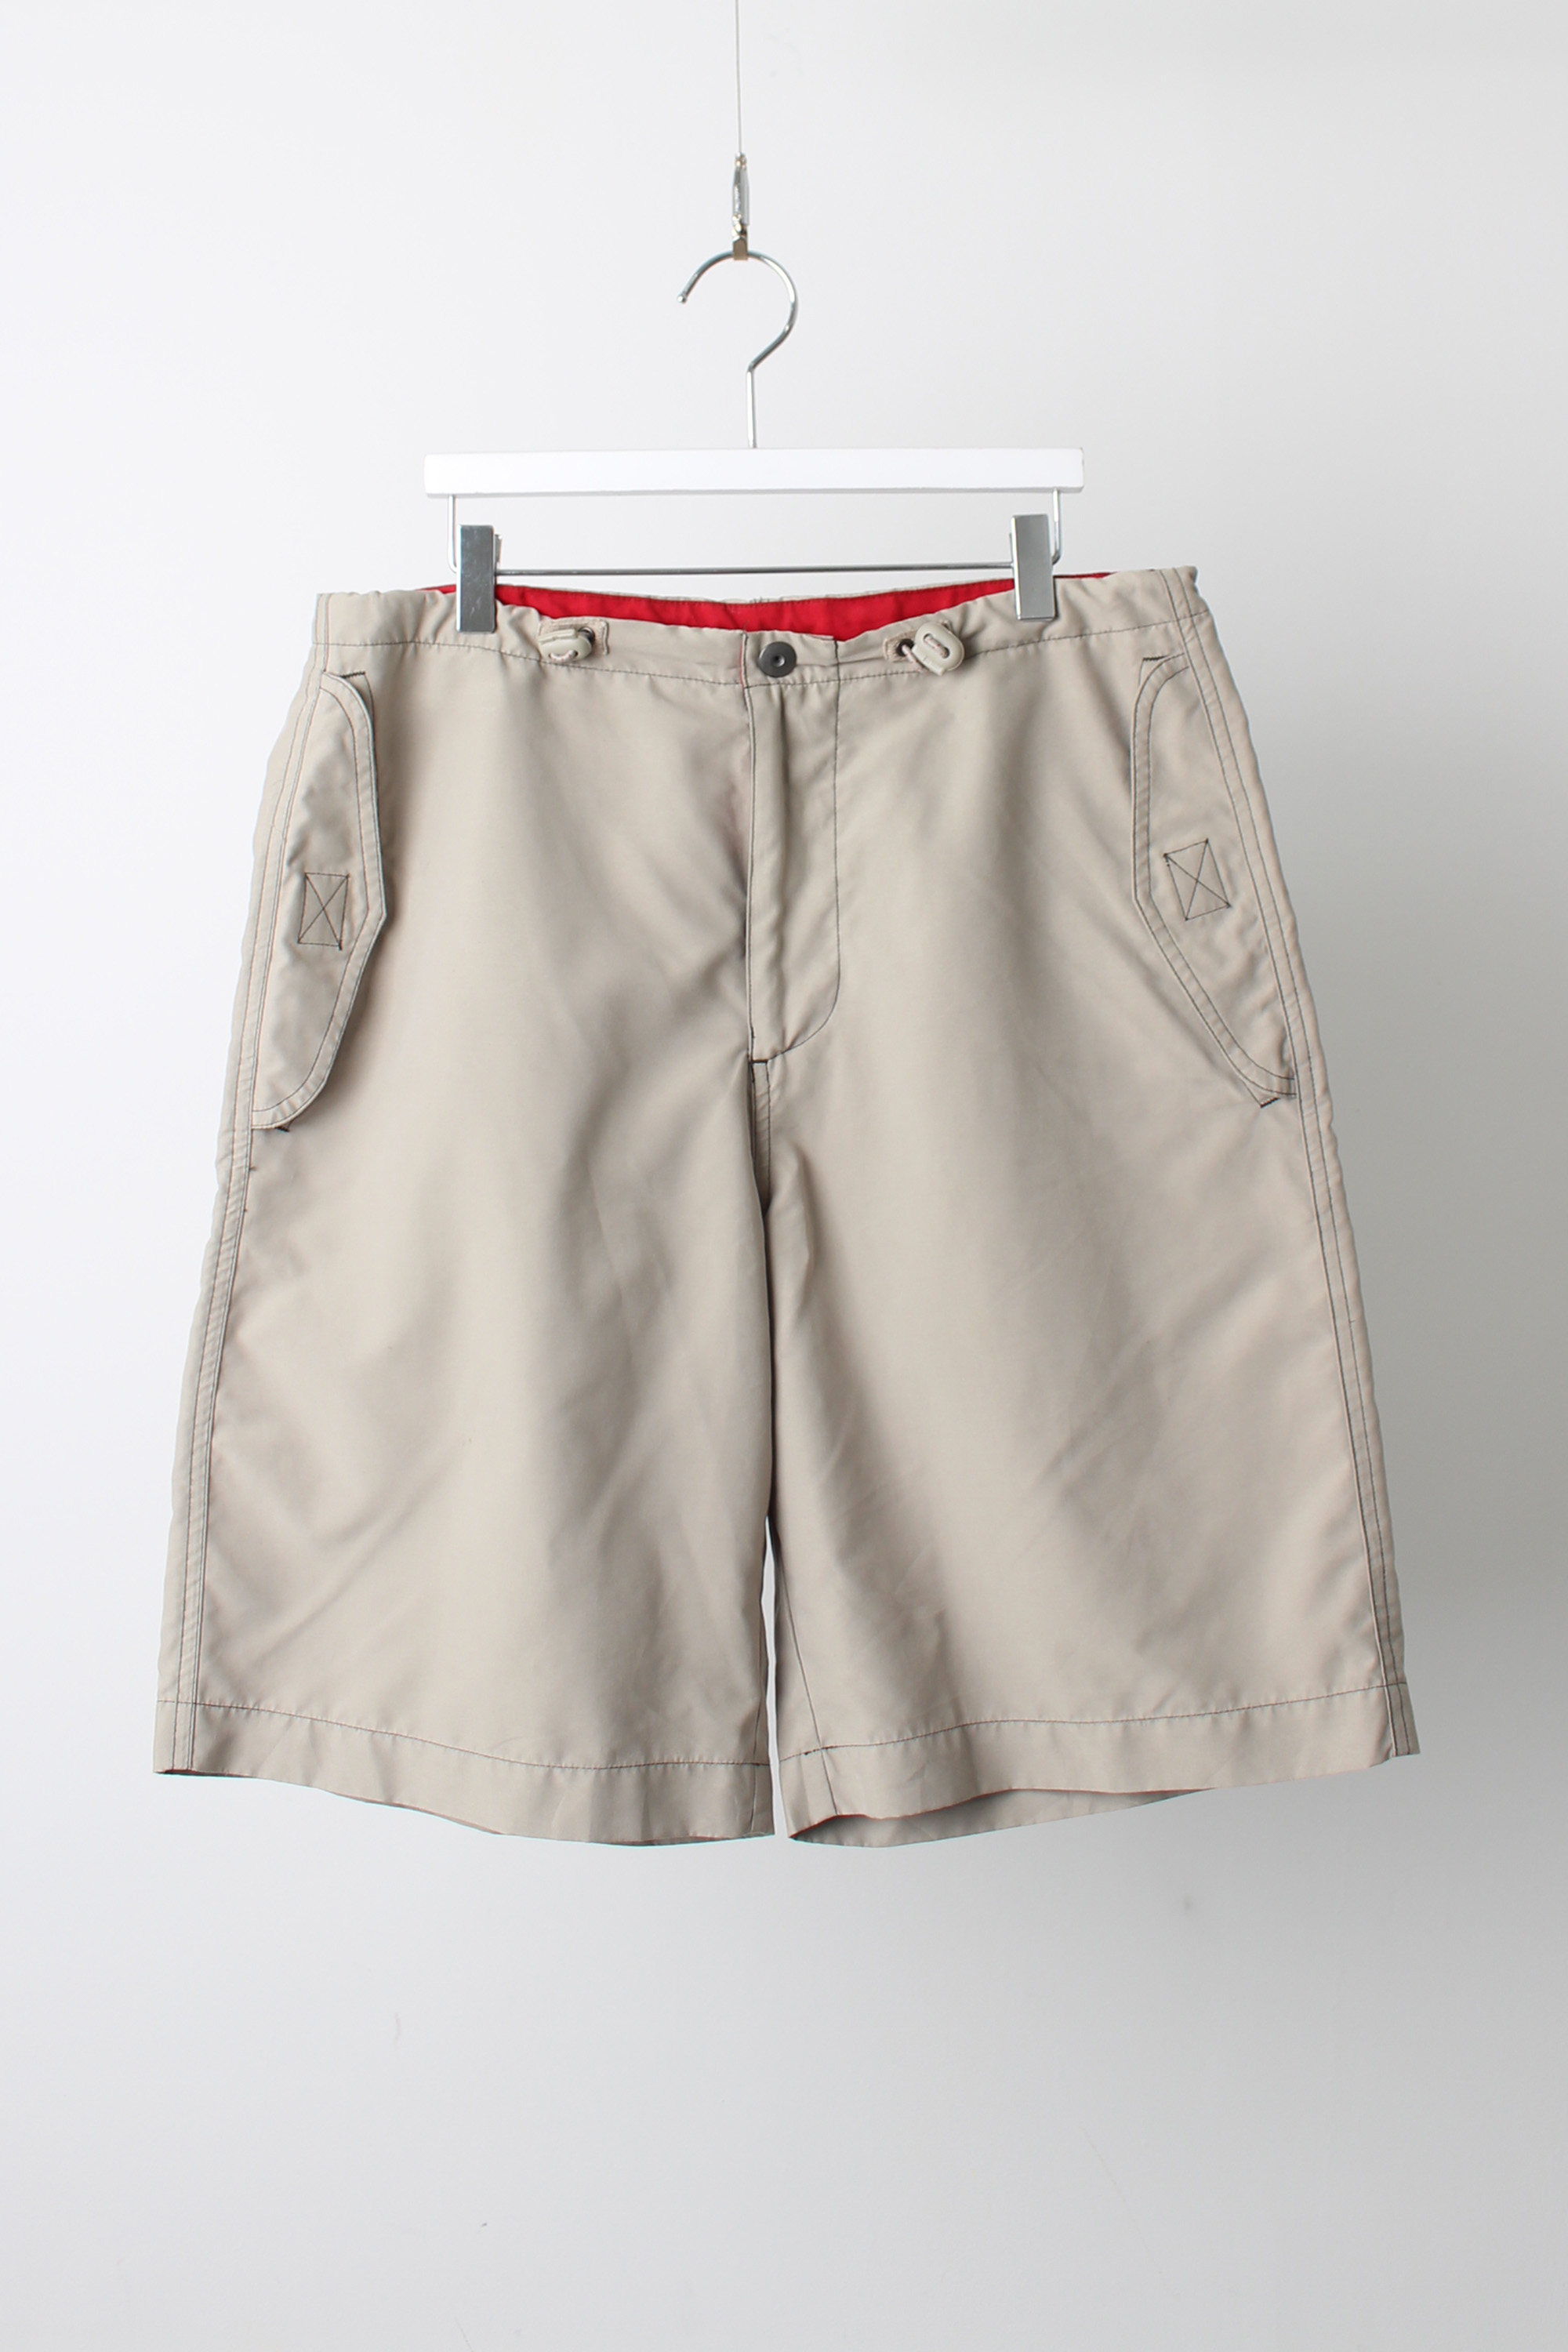 Vintage GAP Shorts